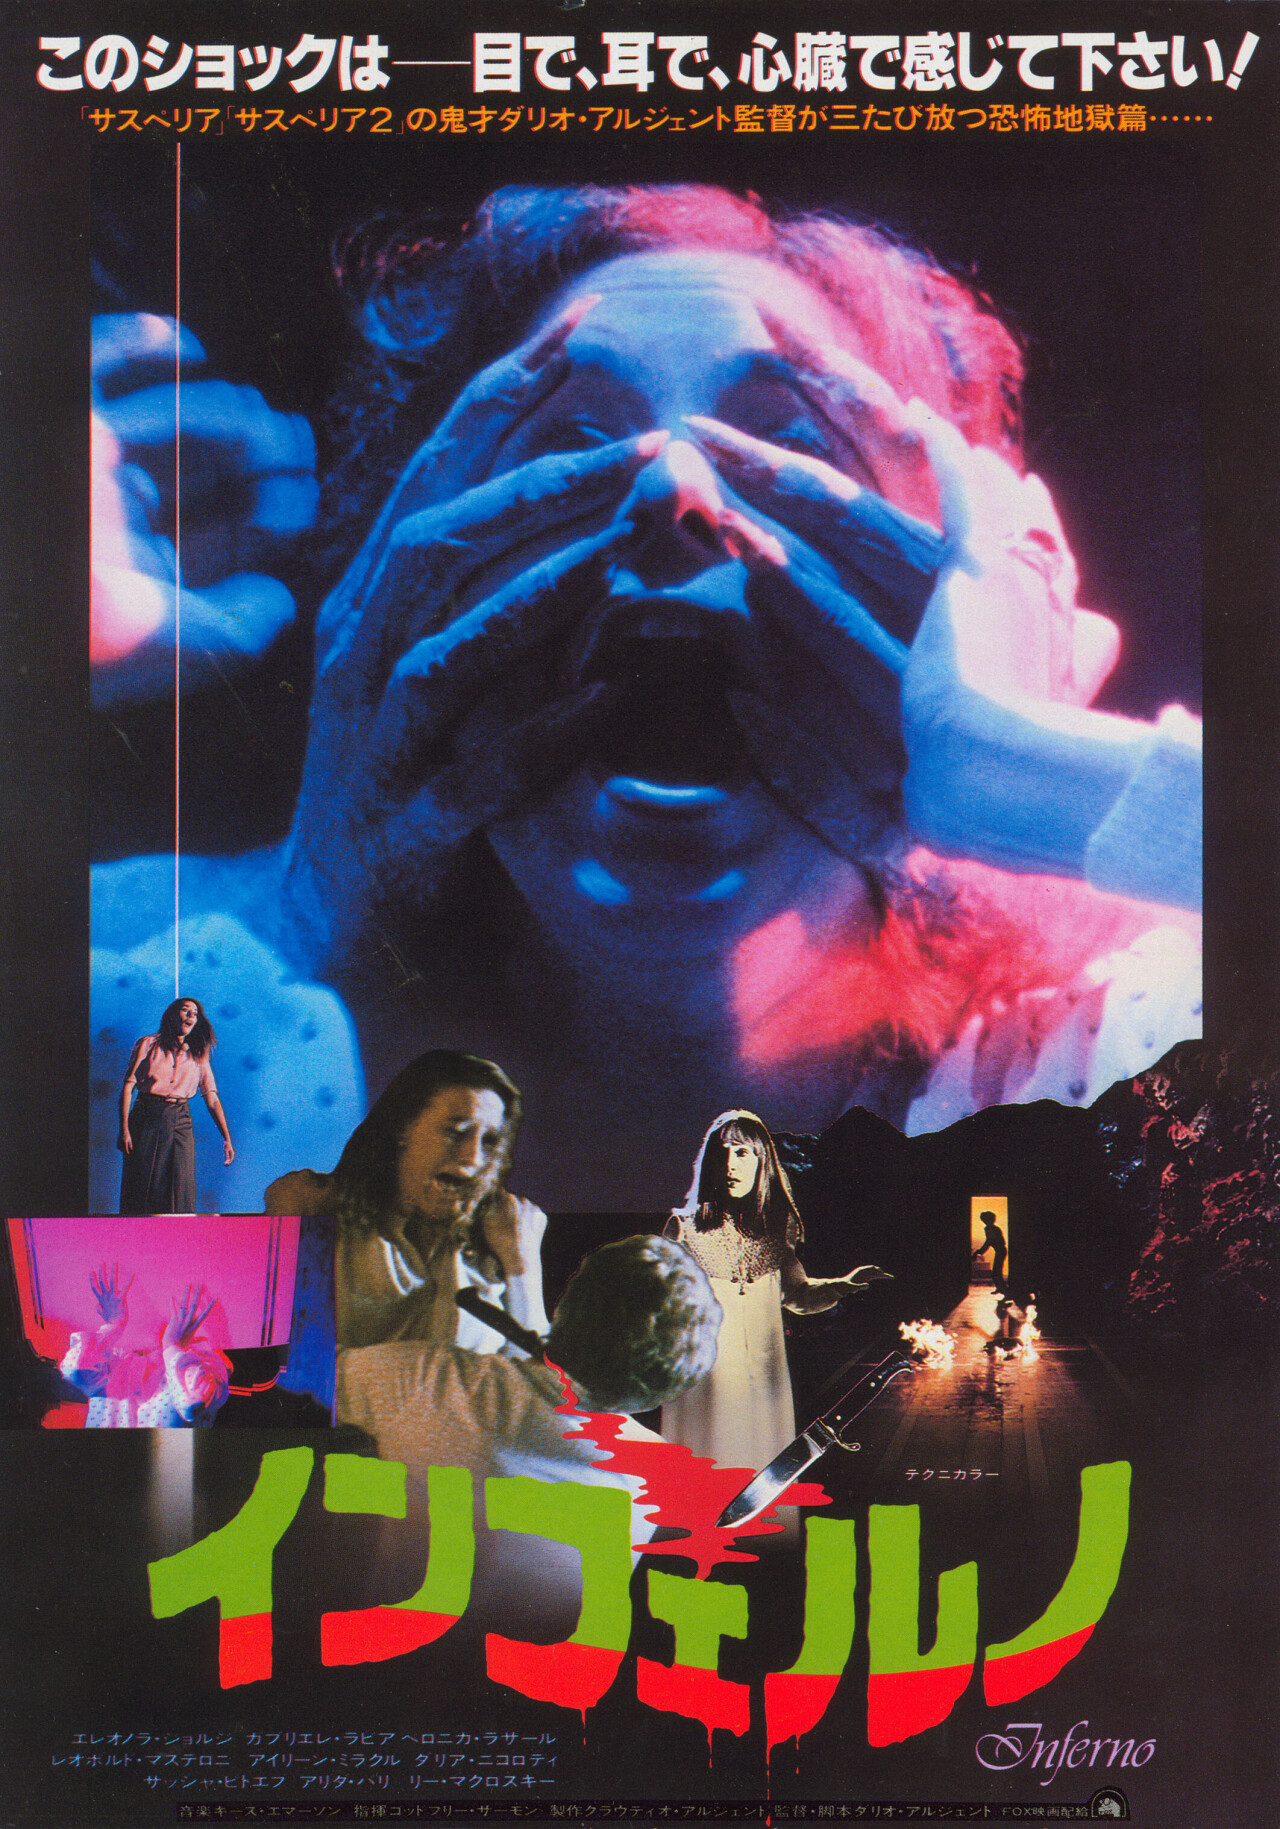 Инферно (Inferno, 1980), режиссёр Дарио Ардженто, японский постер к фильму (ужасы, 1980 год)